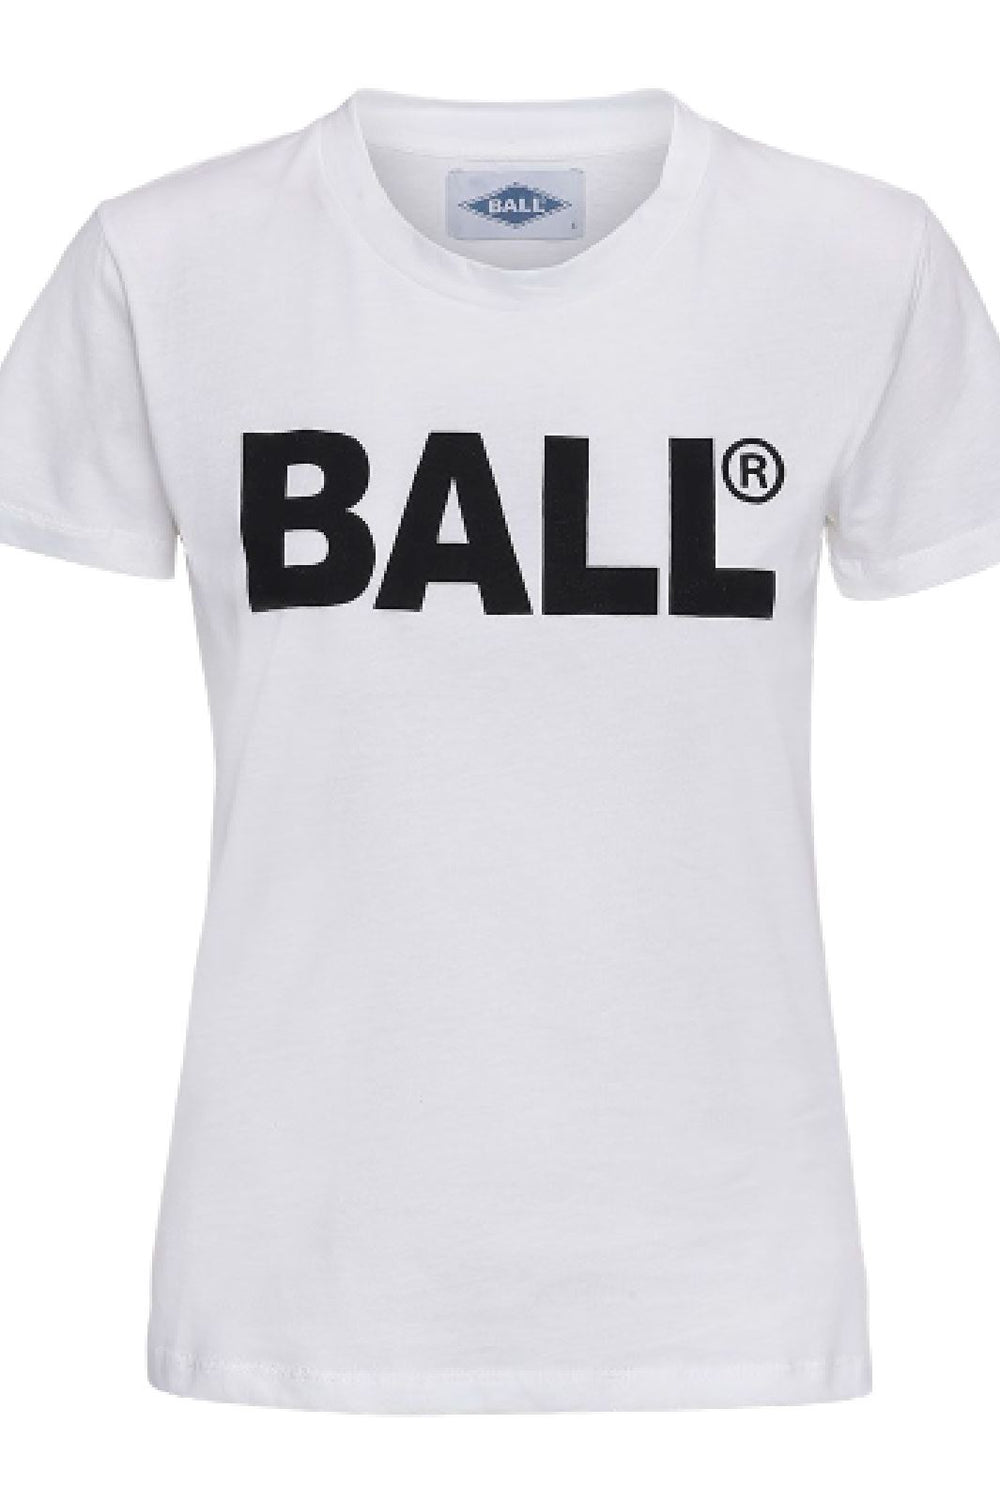 Ball - H Long Woman - White T-shirts 